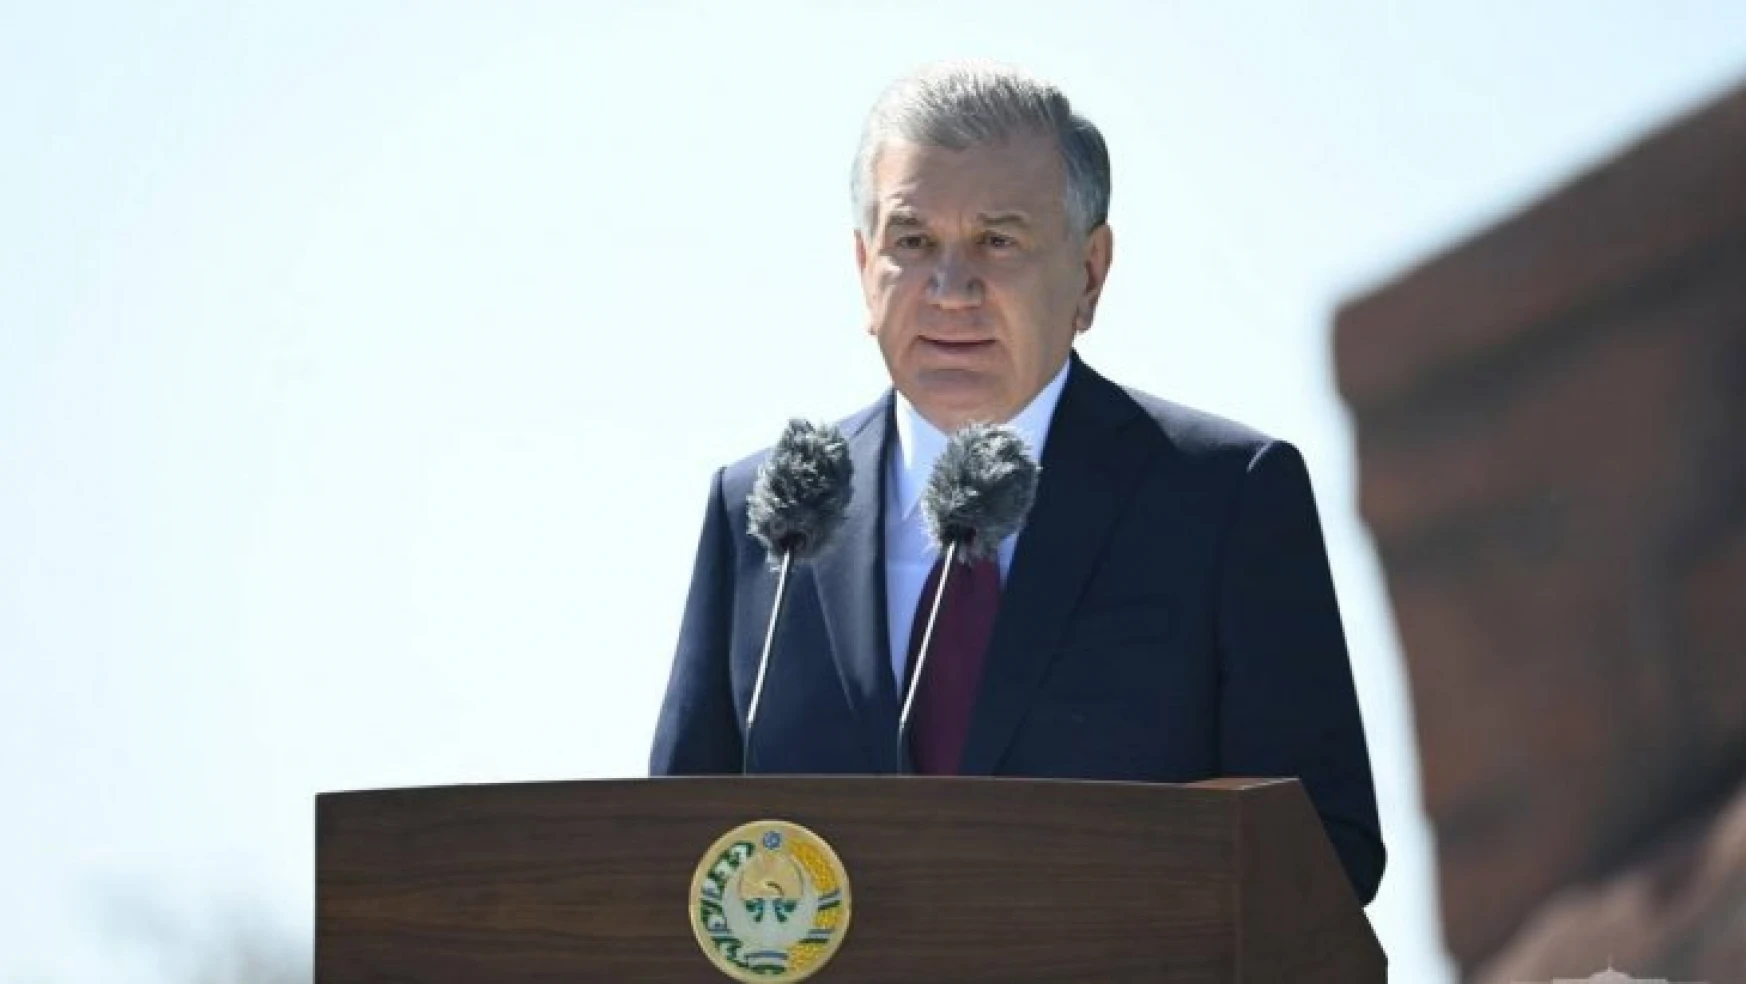 Özbekistan Cumhurbaşkanından Silvan'da Celaleddin  Harzemşah türbesi talebi